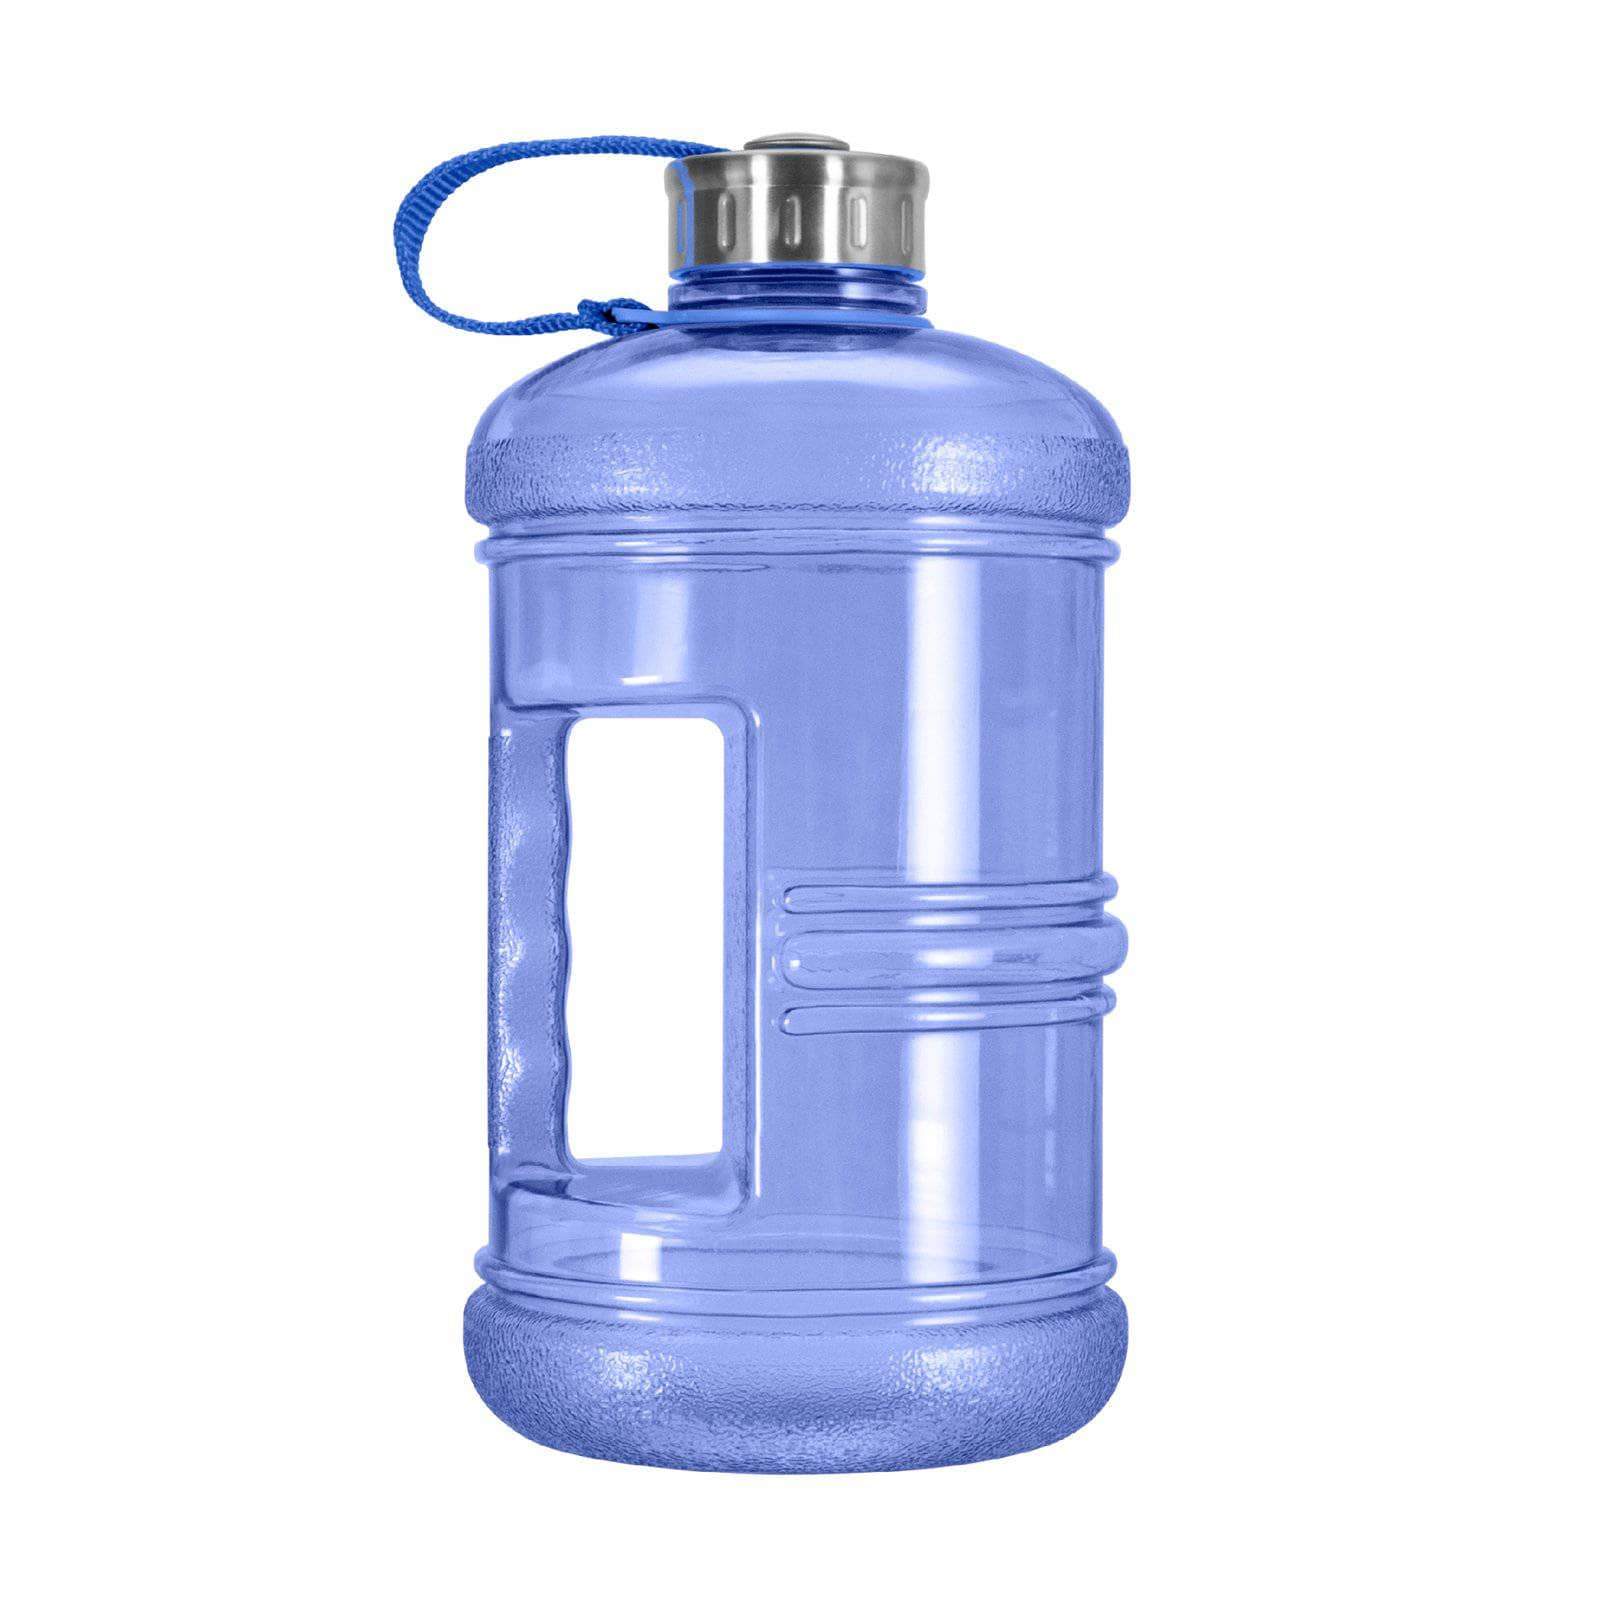 https://geobottles.com/cdn/shop/products/geo-bottles-bottles-2-3-litter-bpa-free-bottle-w-stainless-steel-cap-1470844010528.jpg?v=1549572768